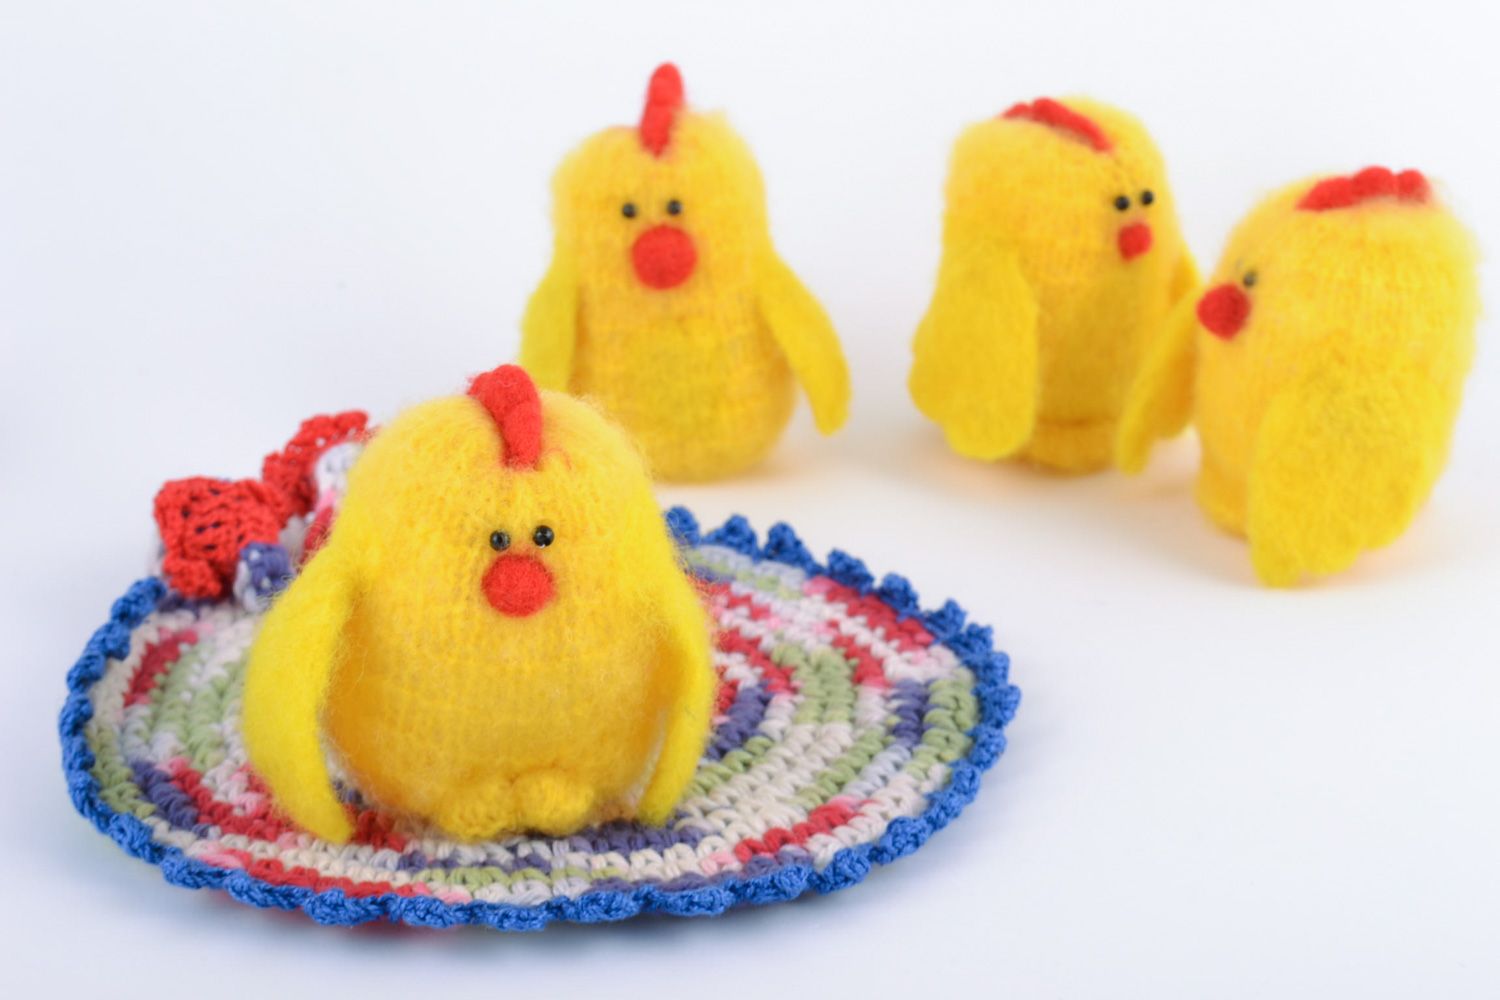 Handgemachtes kleines gelbes Spielzeug aus Wolle für Kinder in Trockenfilzen Technik  foto 1